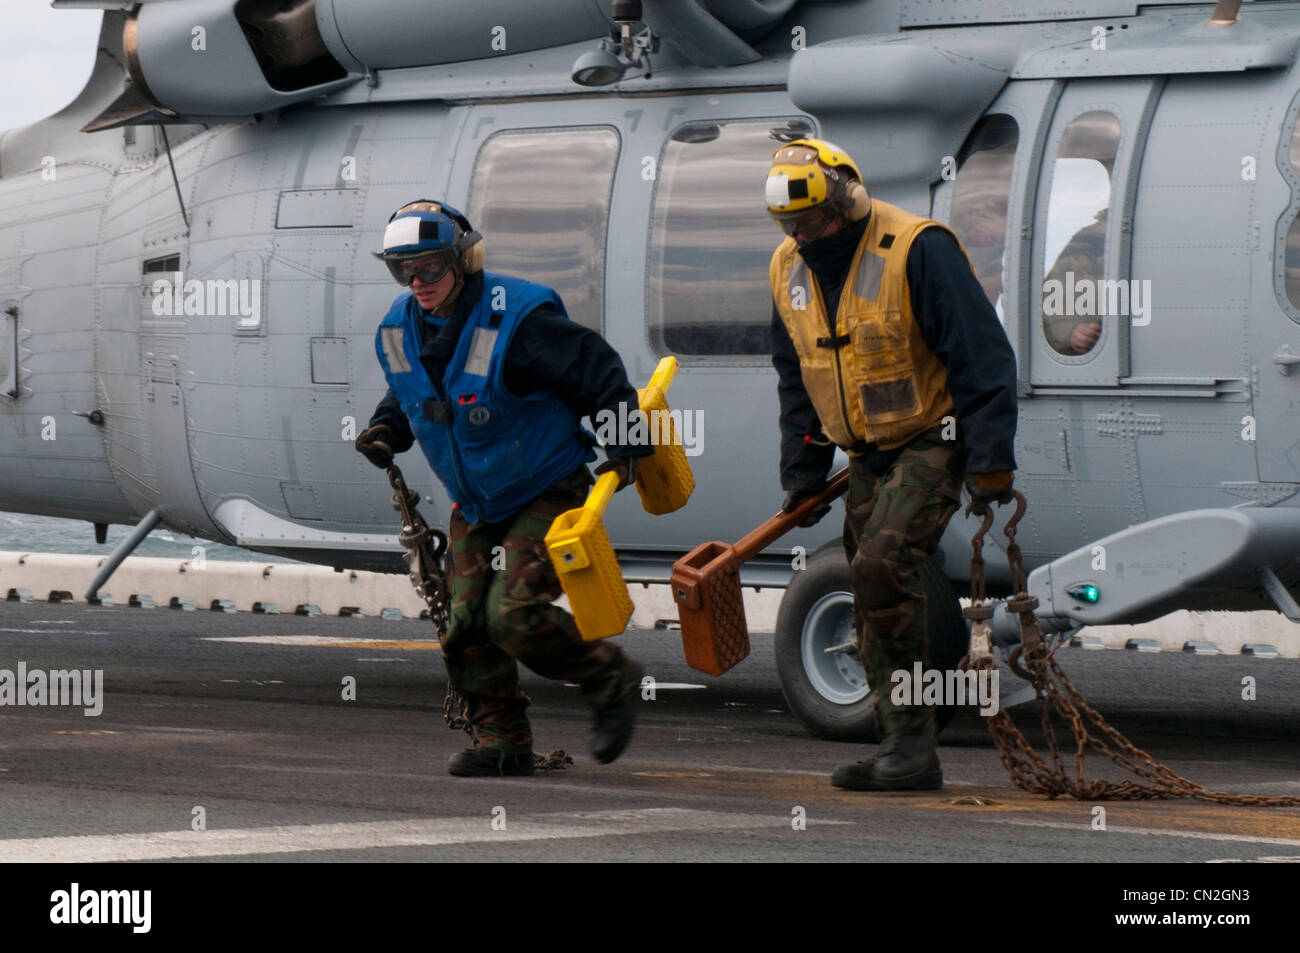 Die Flugbootsfreunde laufen vor einem MH-60S Knight Hawk Hubschrauber, nachdem sie Keile und Ketten entfernt haben und das Flugzeug für den Start auf dem Flugdeck des amphibischen Sturmschiffs USS Kearsarge (LHD 3) bereit gemacht haben. Kearsarge führt derzeit ein Training der Afloat Training Group 1.4 in der Grundphase durch. Stockfoto